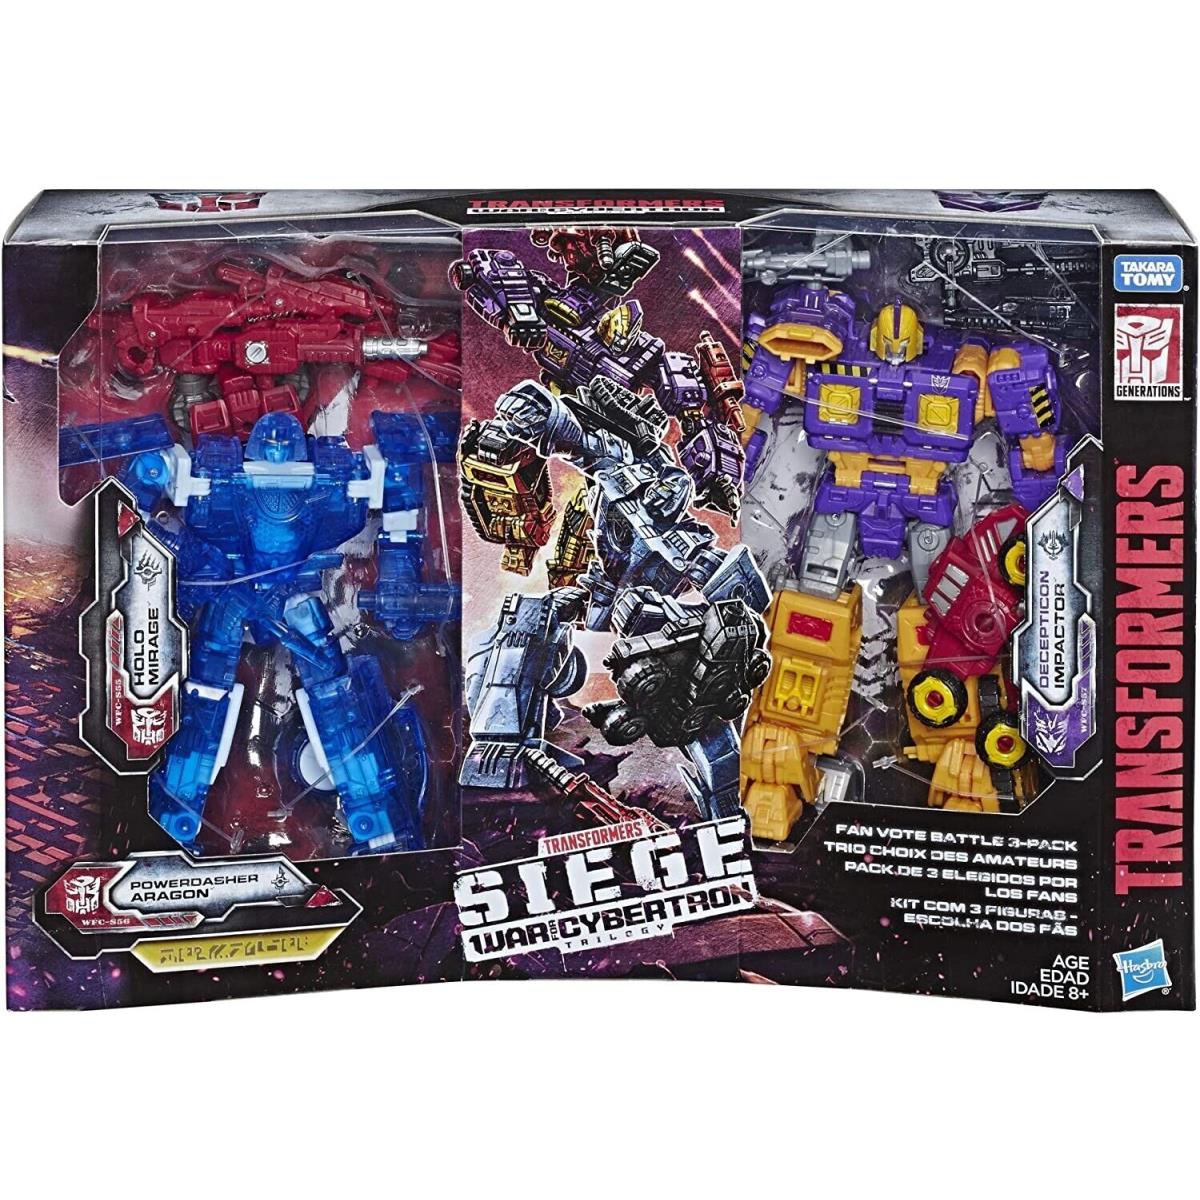 Transformers Toys Generations War For Cybertron Deluxe Fan-vote Battle 3 Pk